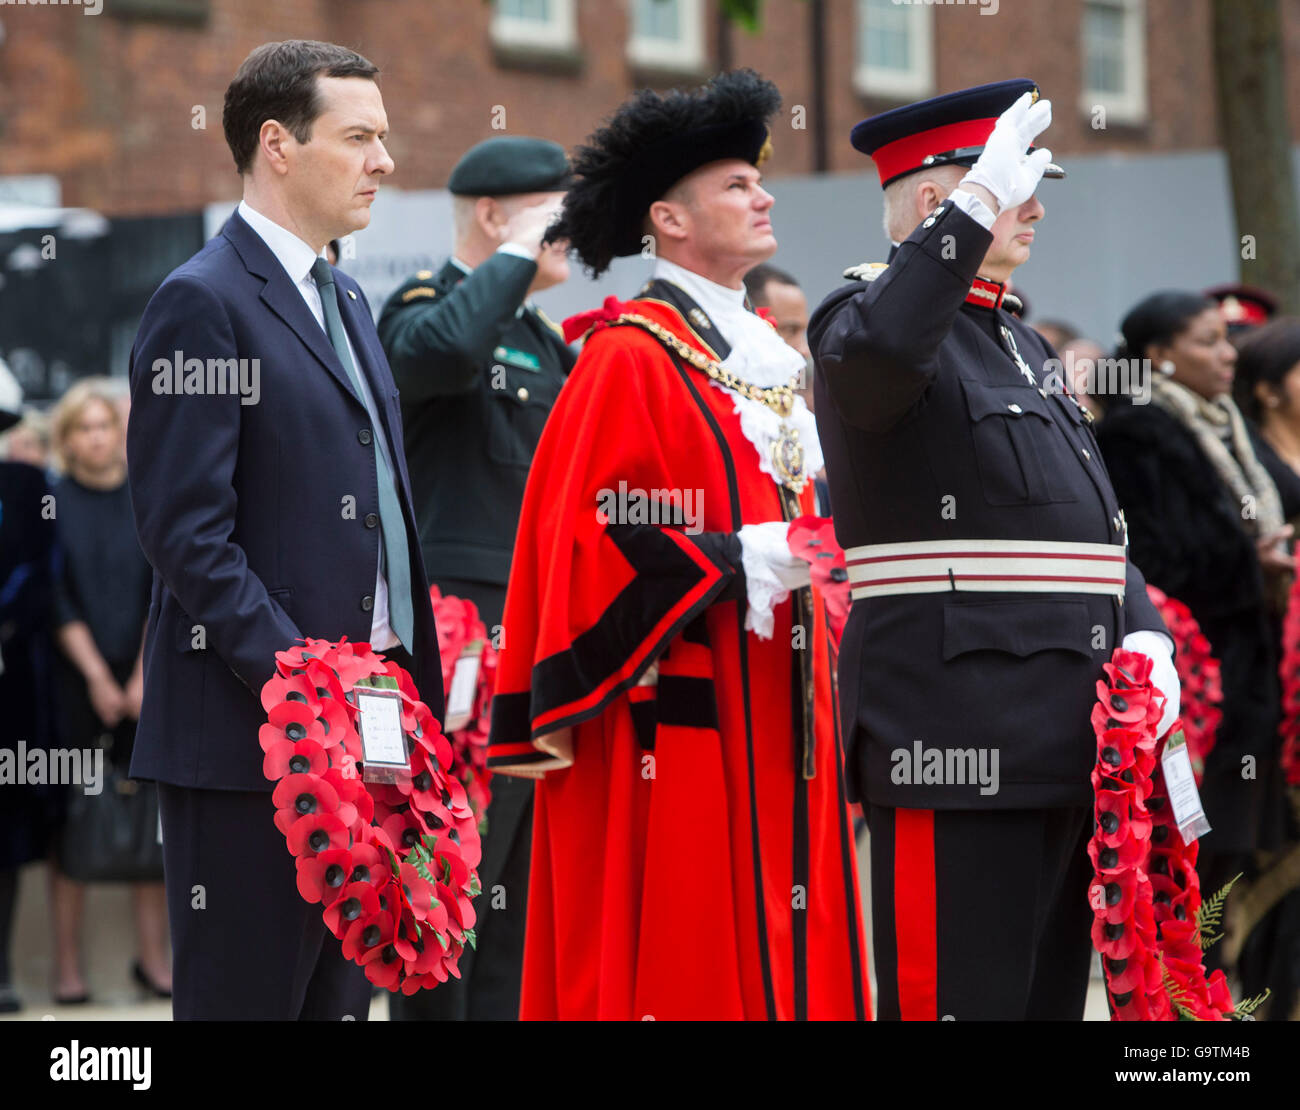 Le Chancelier George Osborne (à gauche) se prépare à mettre une mine au cénotaphe de St Peter's Square, Manchester, où une cérémonie est organisée pour marquer le 100e anniversaire du début de la bataille de la Somme. Banque D'Images